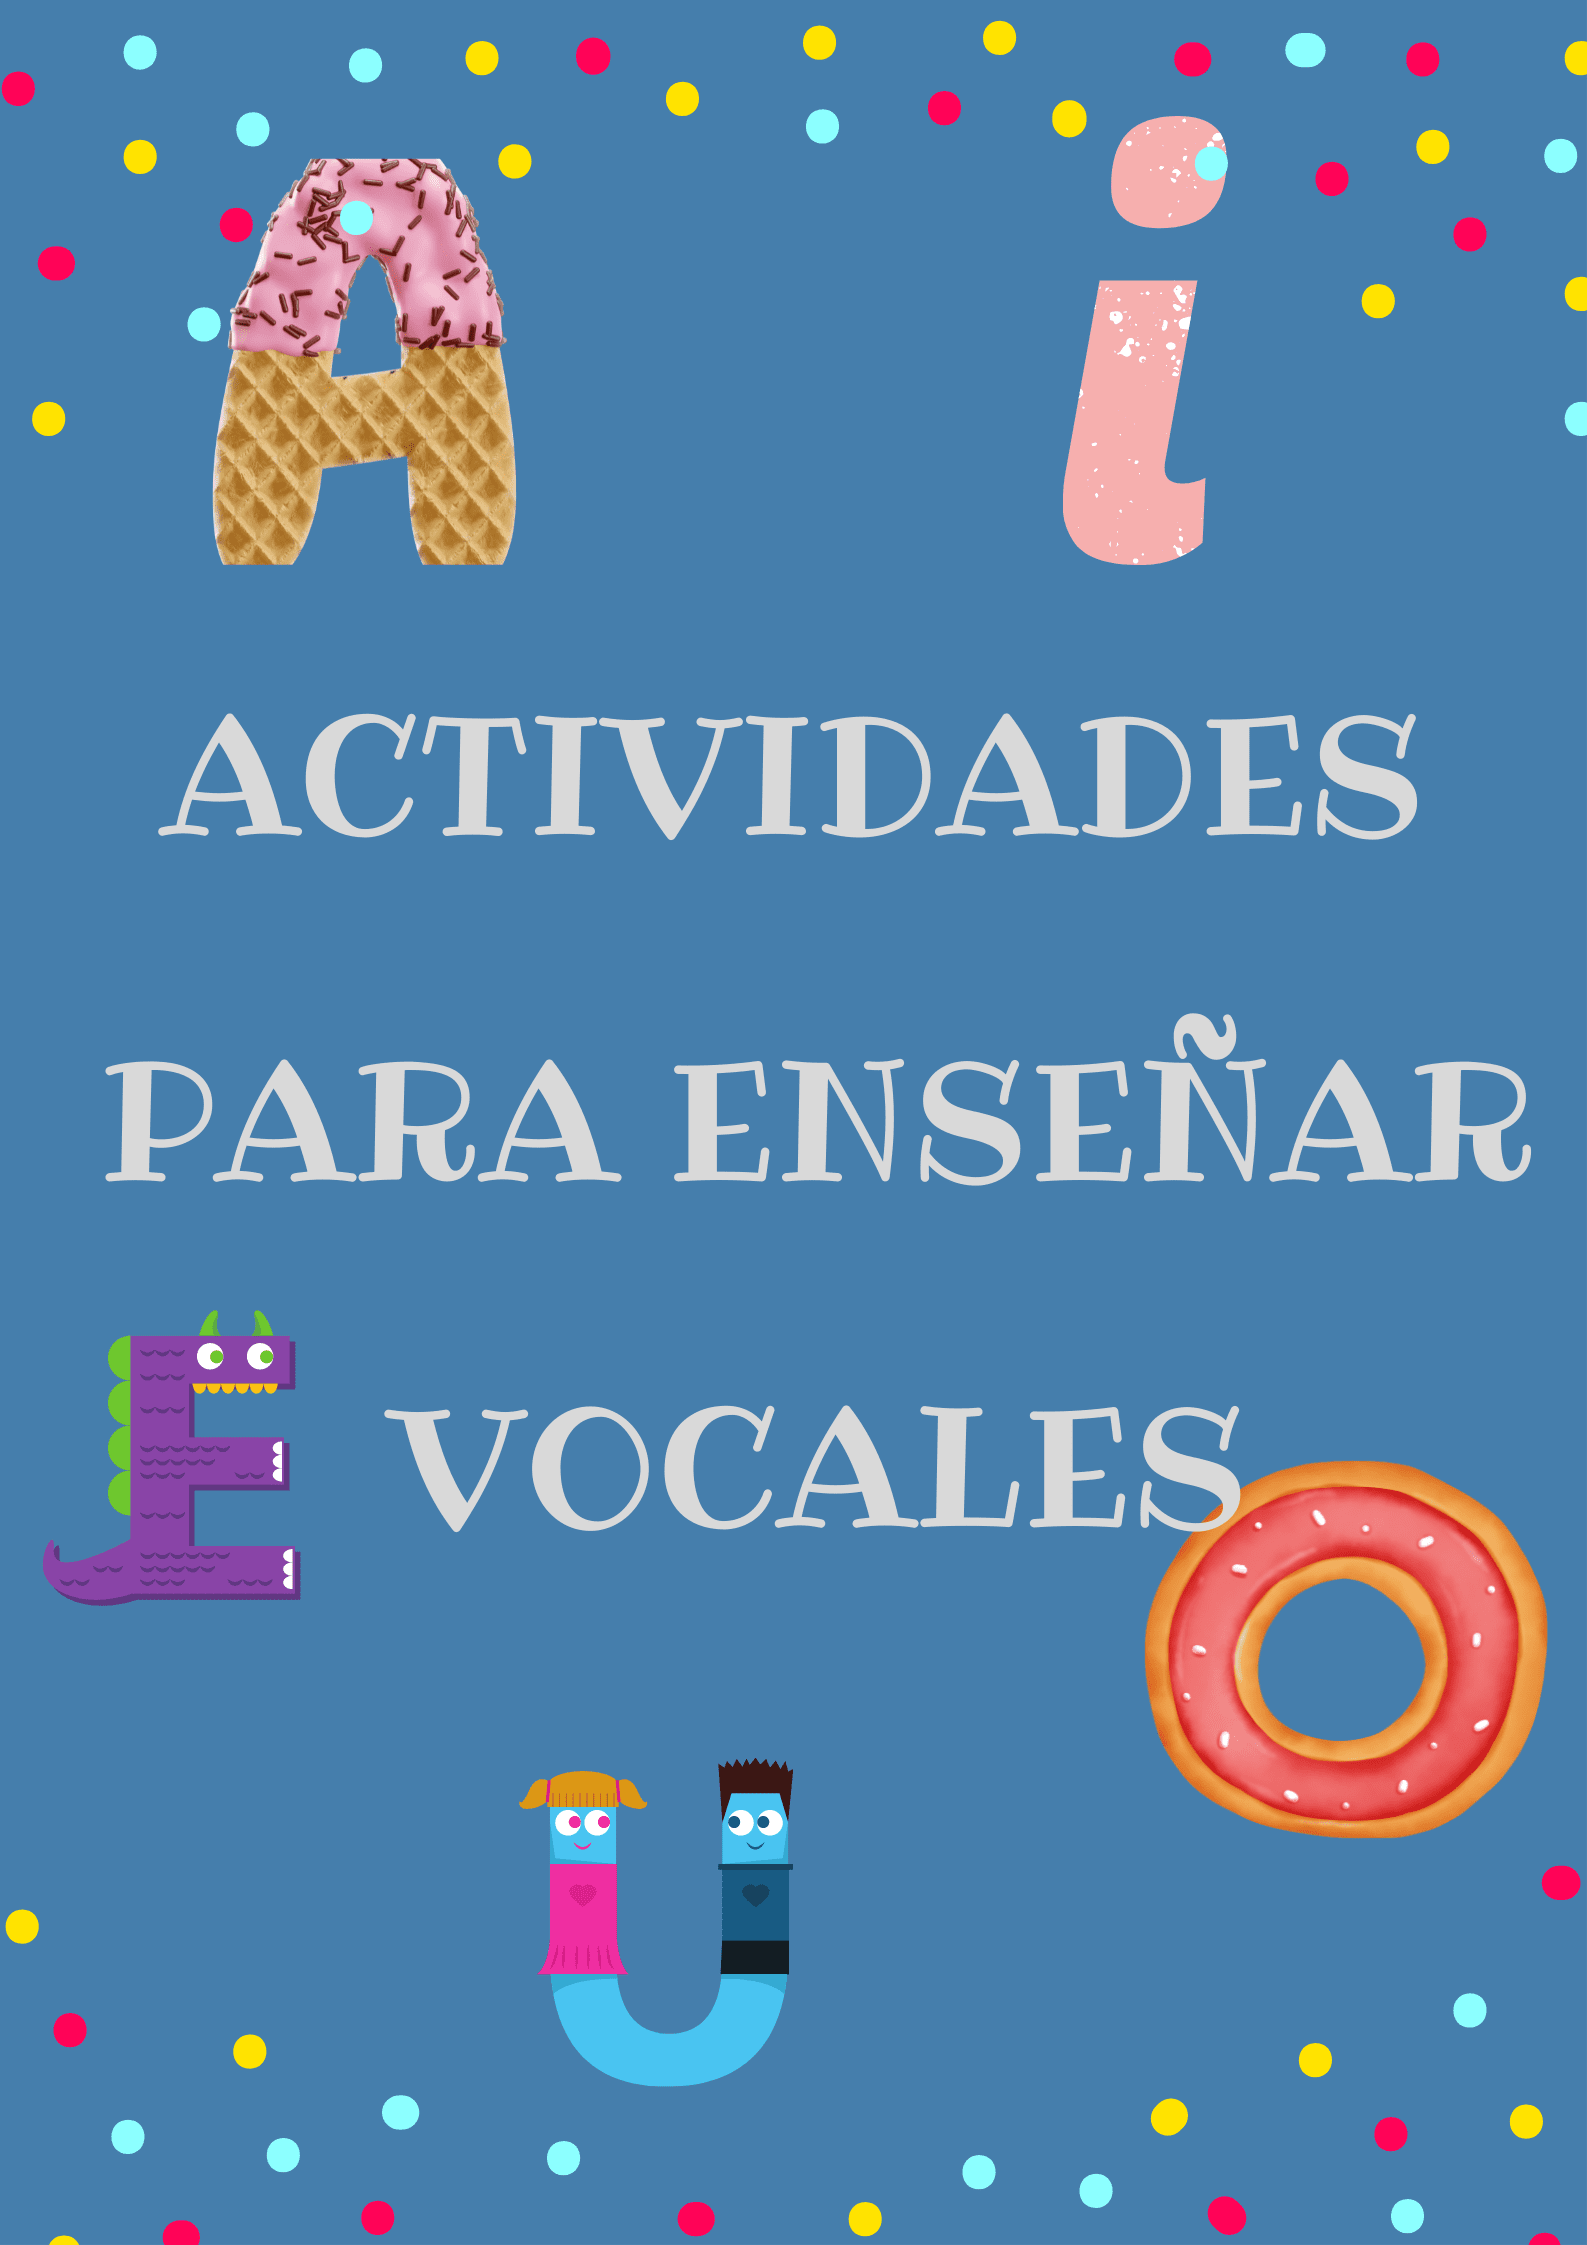 Actividades para enseñar las vocales.png